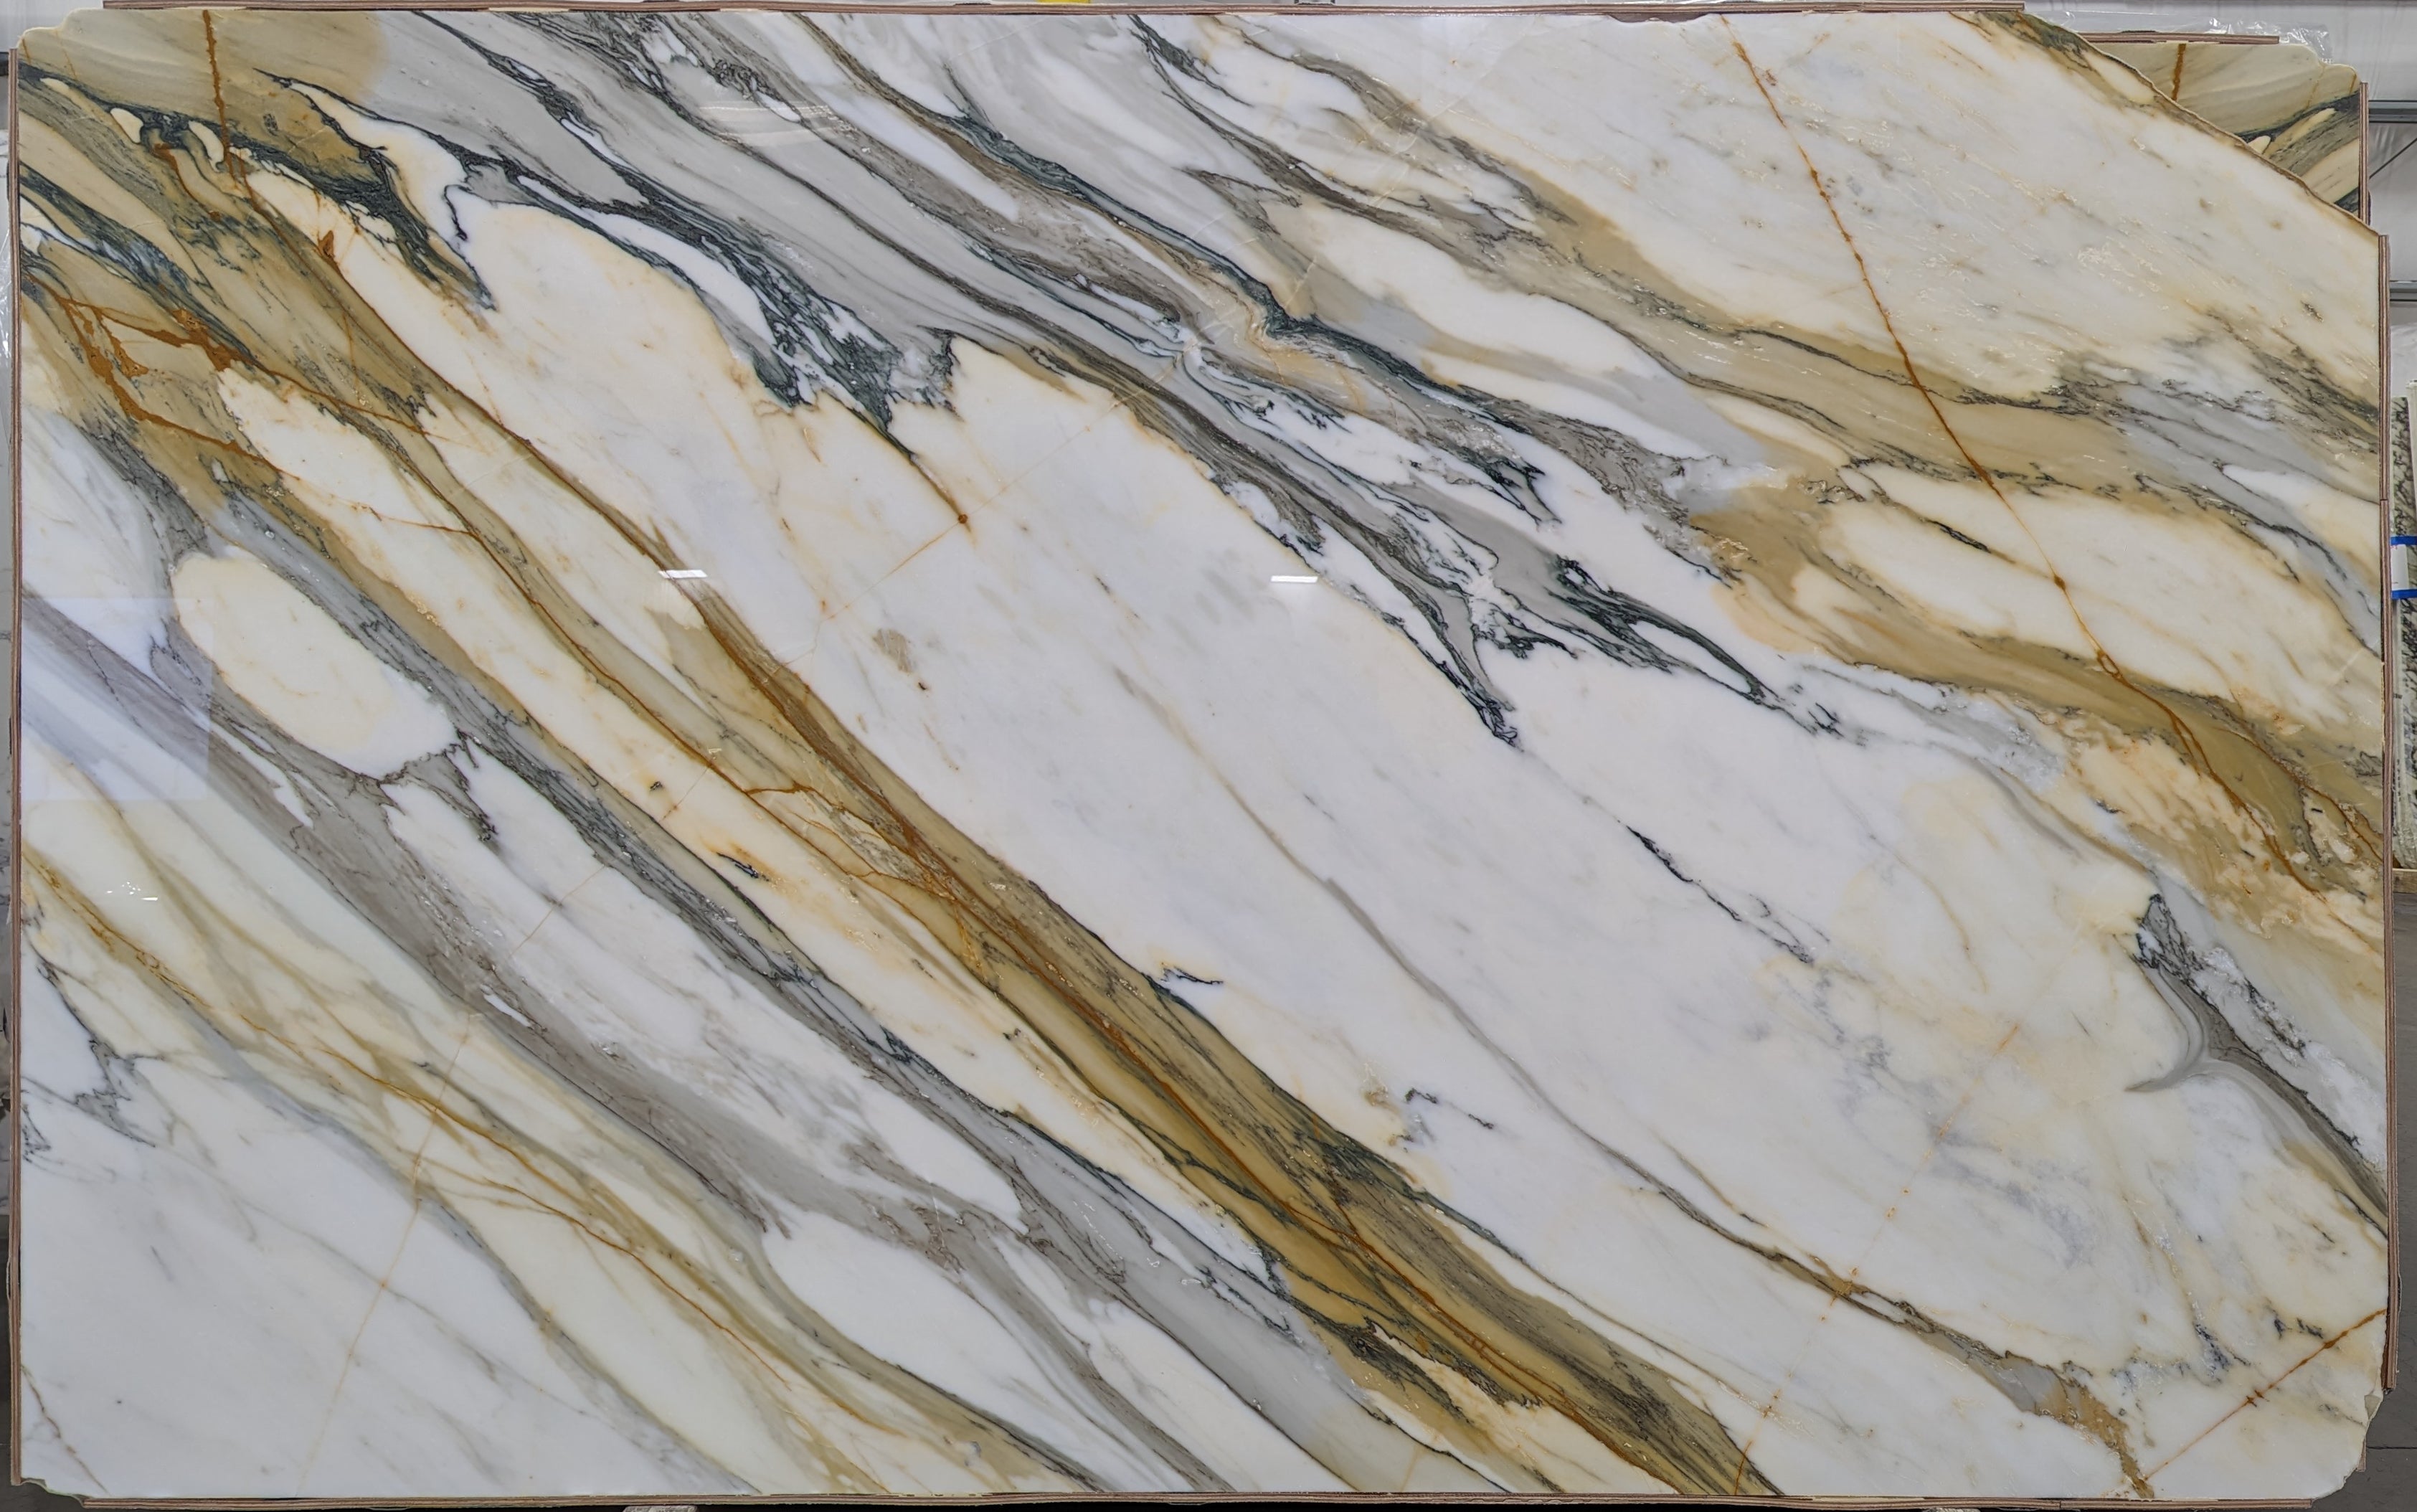  Calacatta Macchia Vecchia Marble Slab 3/4 - 26095#47 -  70x102 